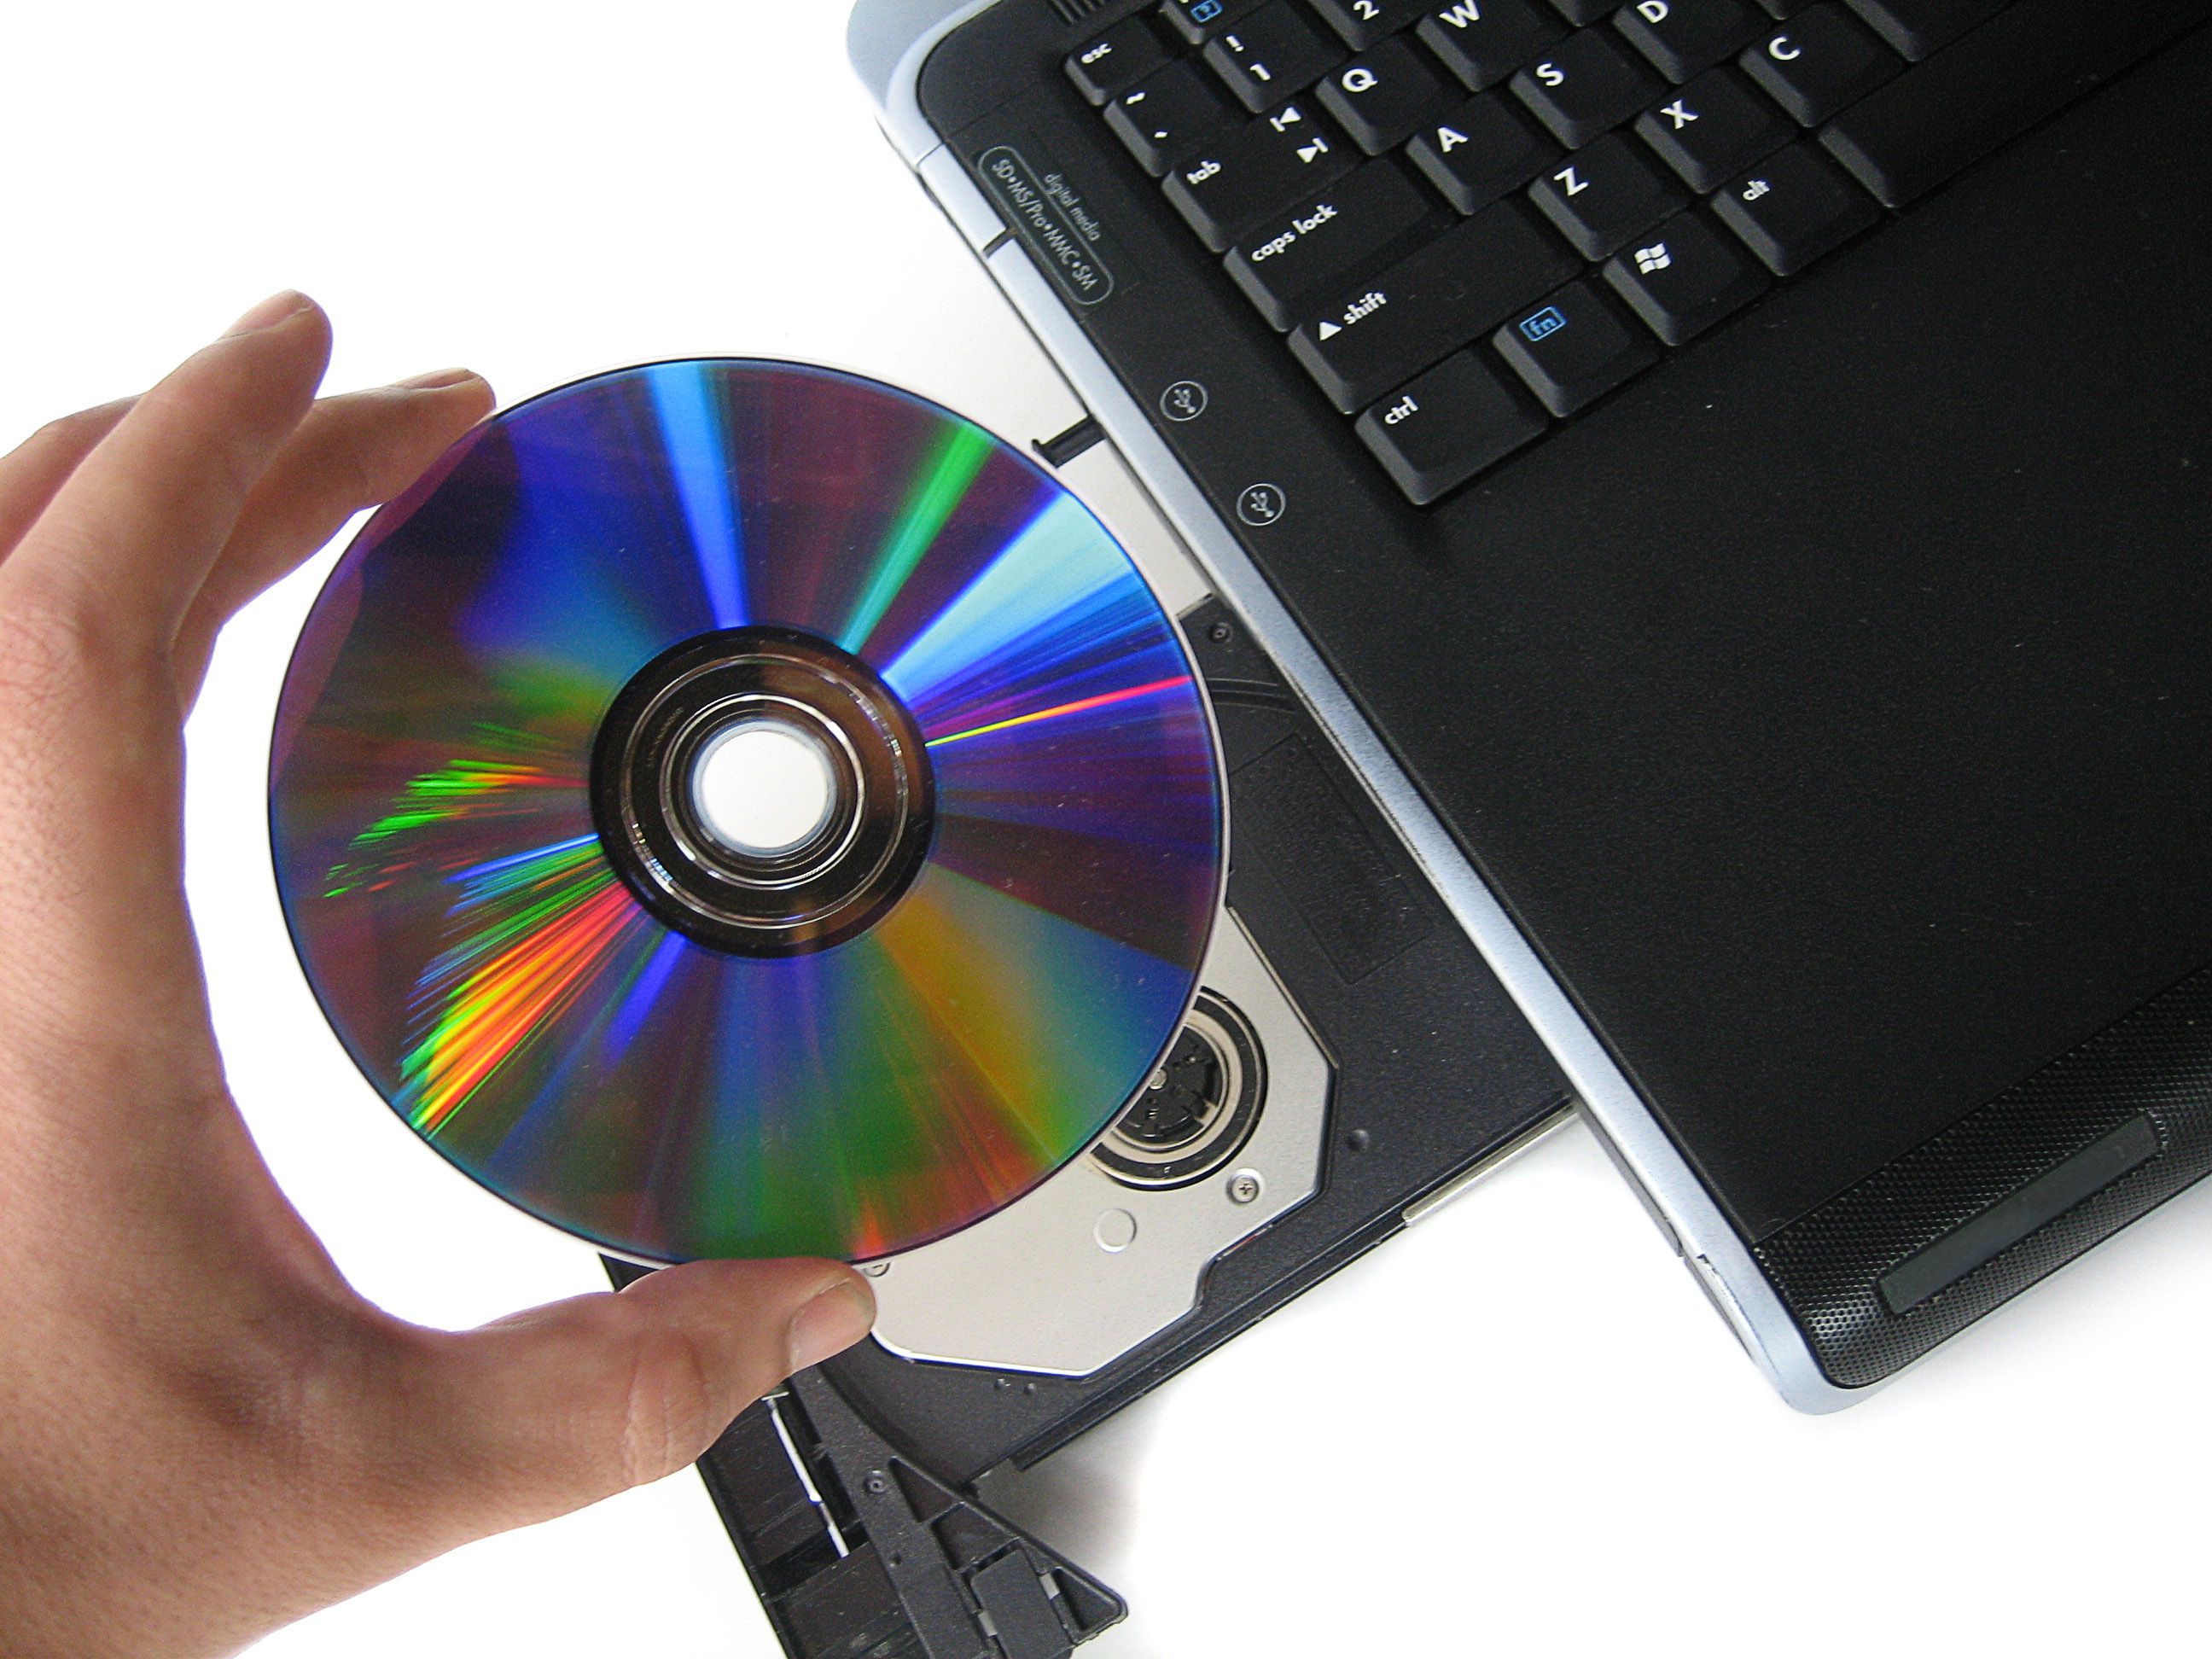 CD/DVD-привод не читает или не видит диски, что можно сделать?